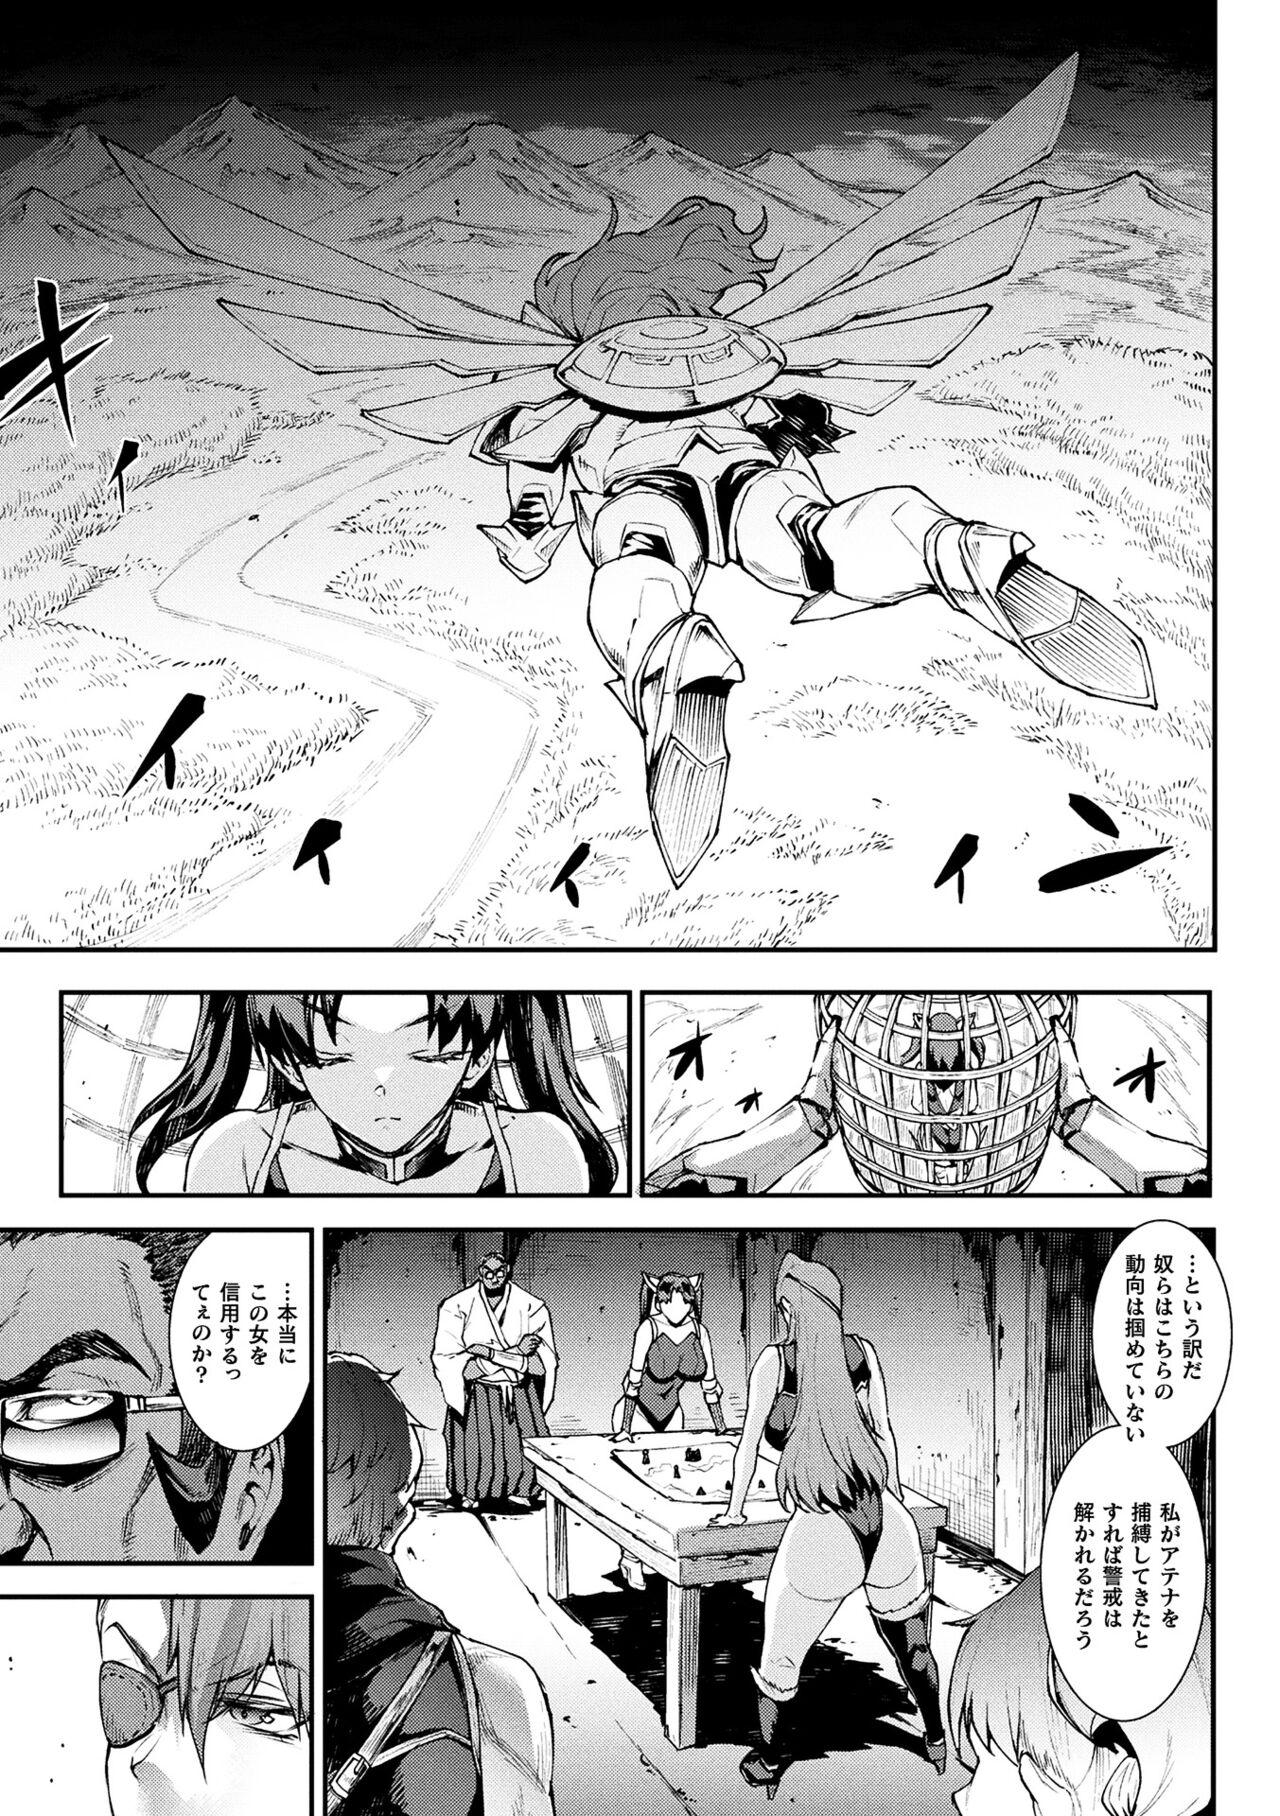 [Erect Sawaru] Raikou Shinki Igis Magia III -PANDRA saga 3rd ignition- 4 [Digital] 74